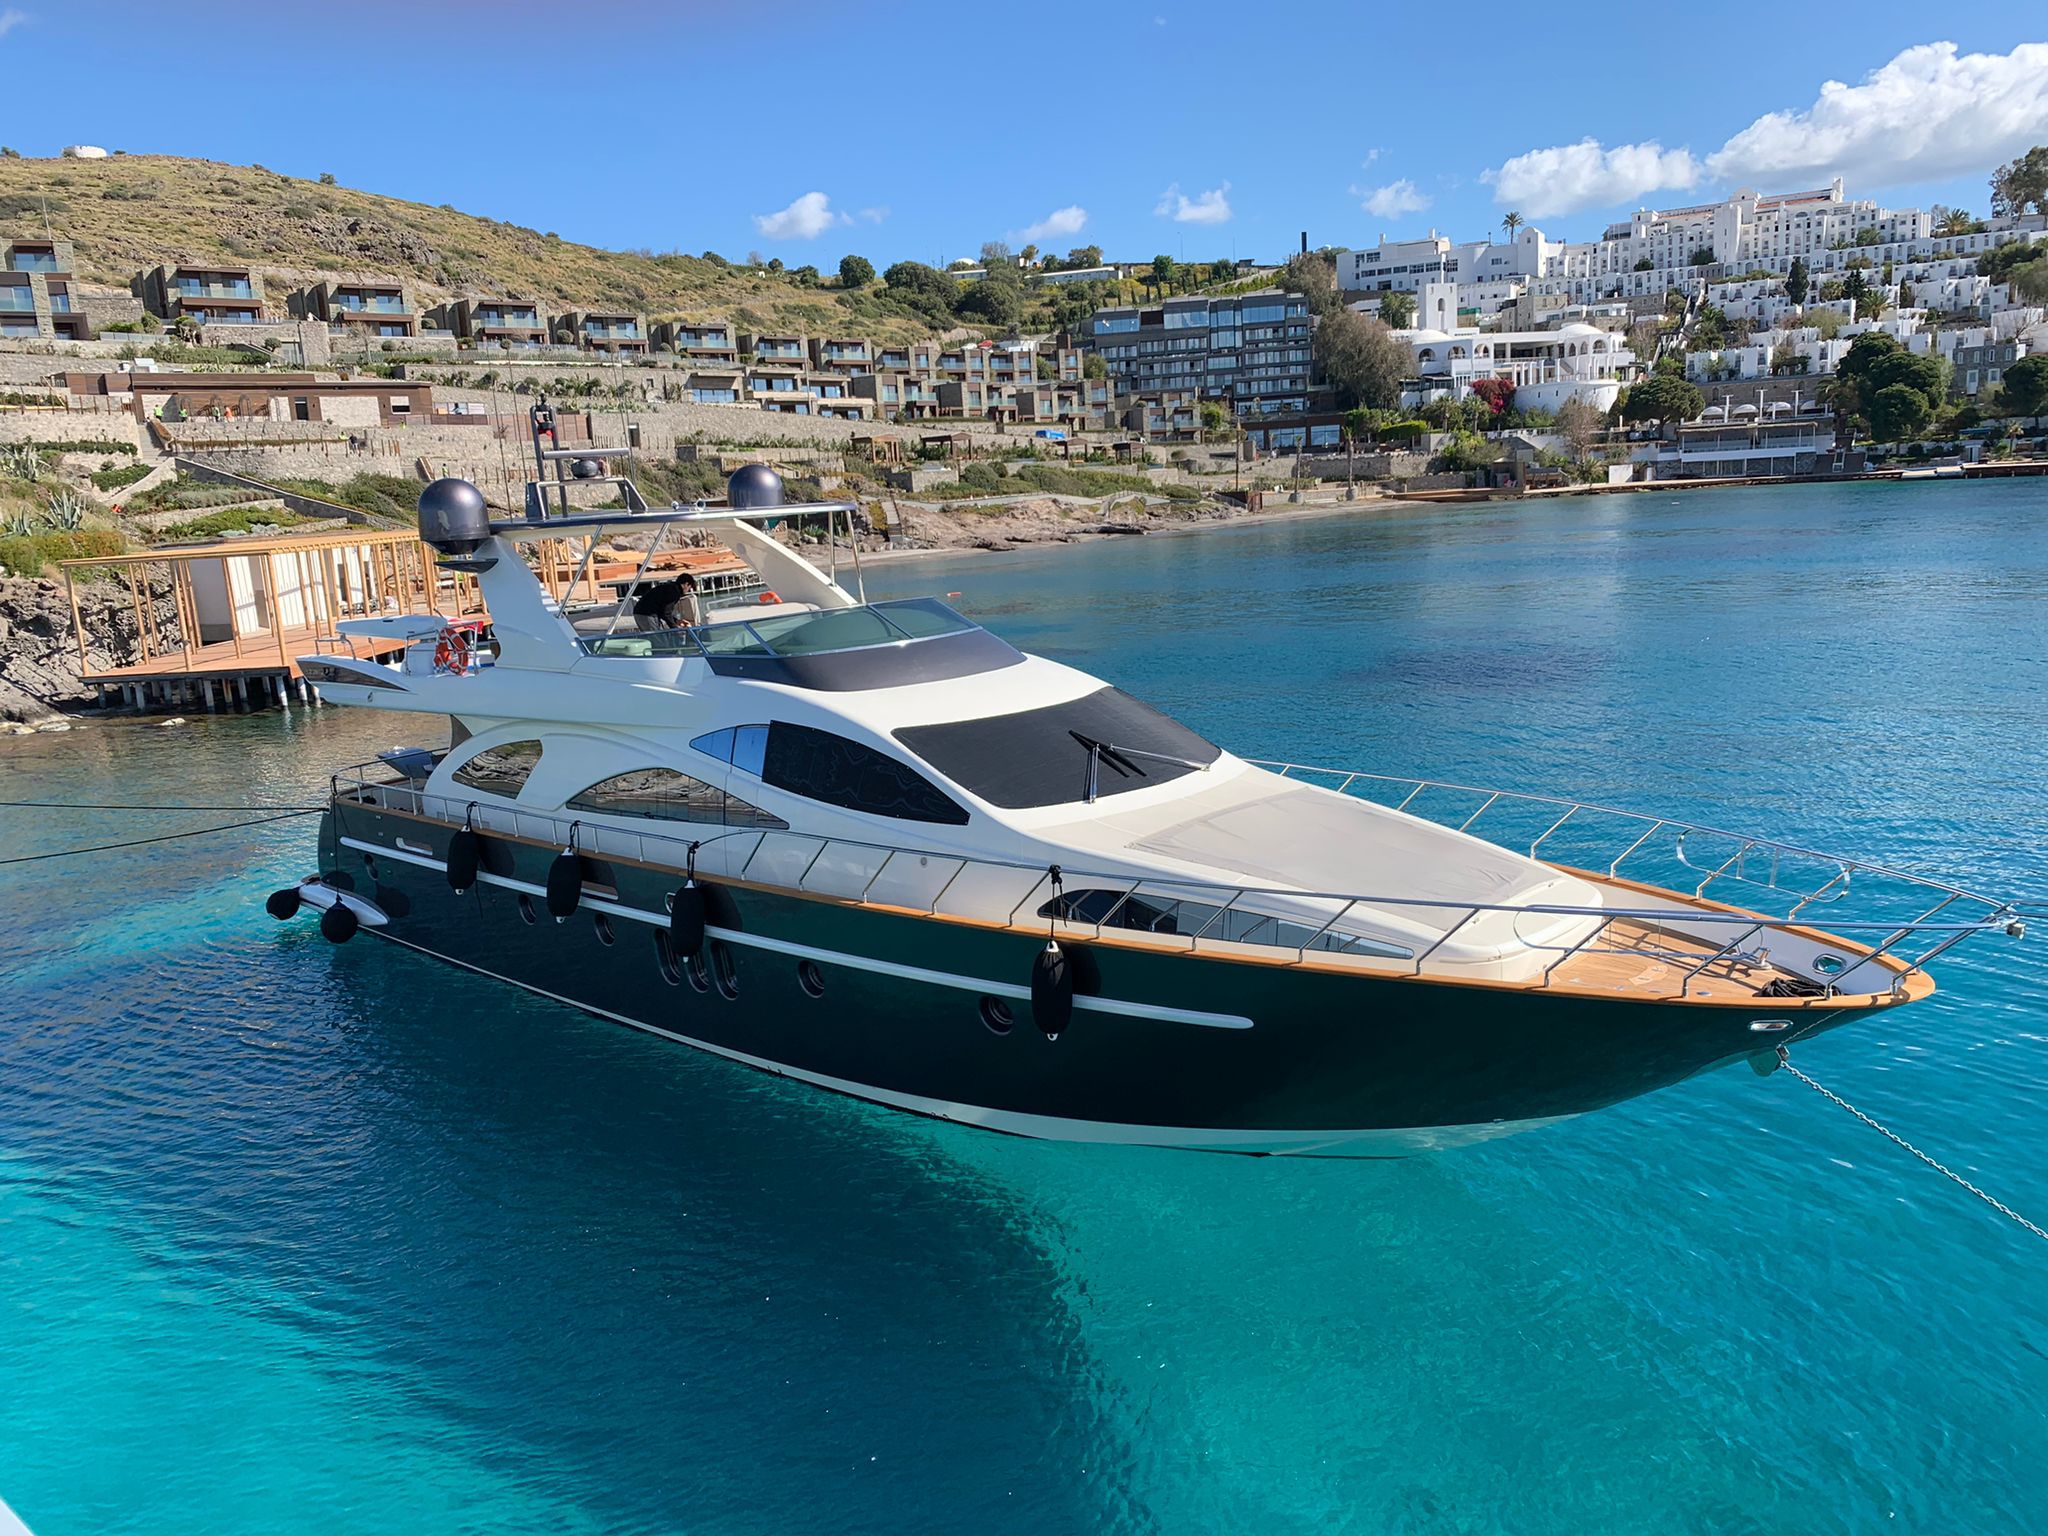 Azimut 80 - Superyacht charter St Martin & Boat hire in Greece Cyclades Islands Mykonos Mykonos 2